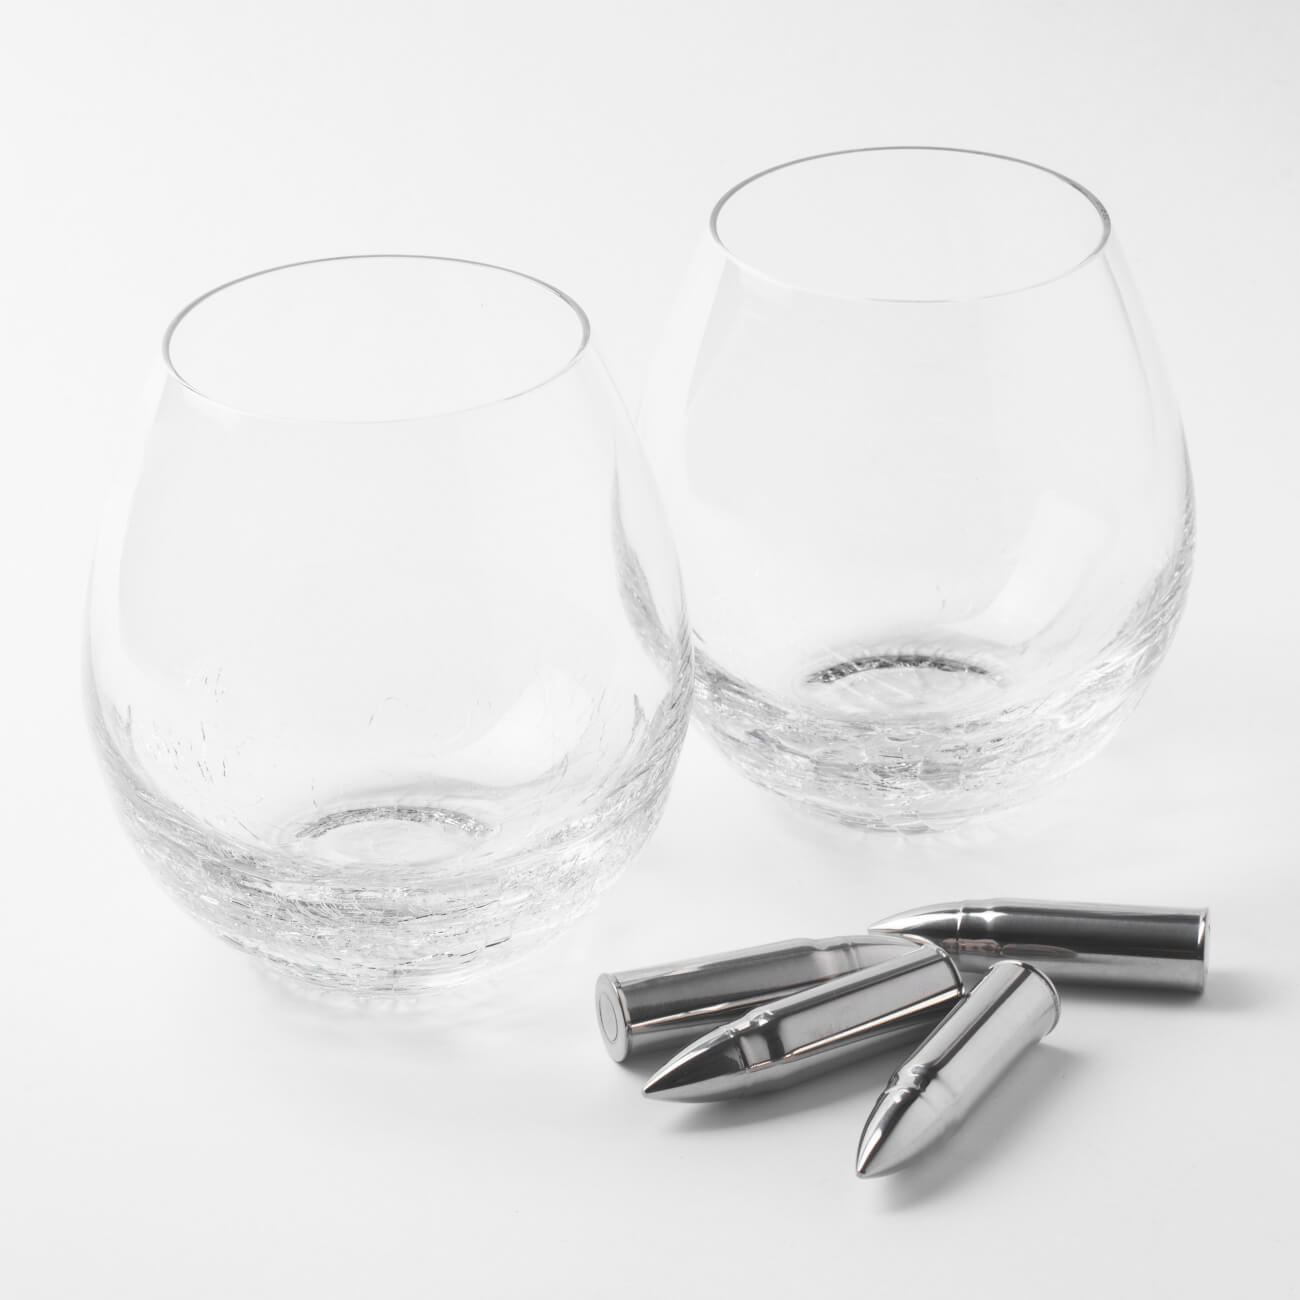 Набор для виски, 2 перс, 6 пр, стаканы/кубики, стекло/сталь, Кракелюр, Пули, Bullet набор для виски 1 перс 4 пр стакан кубики стекло р гранит peak